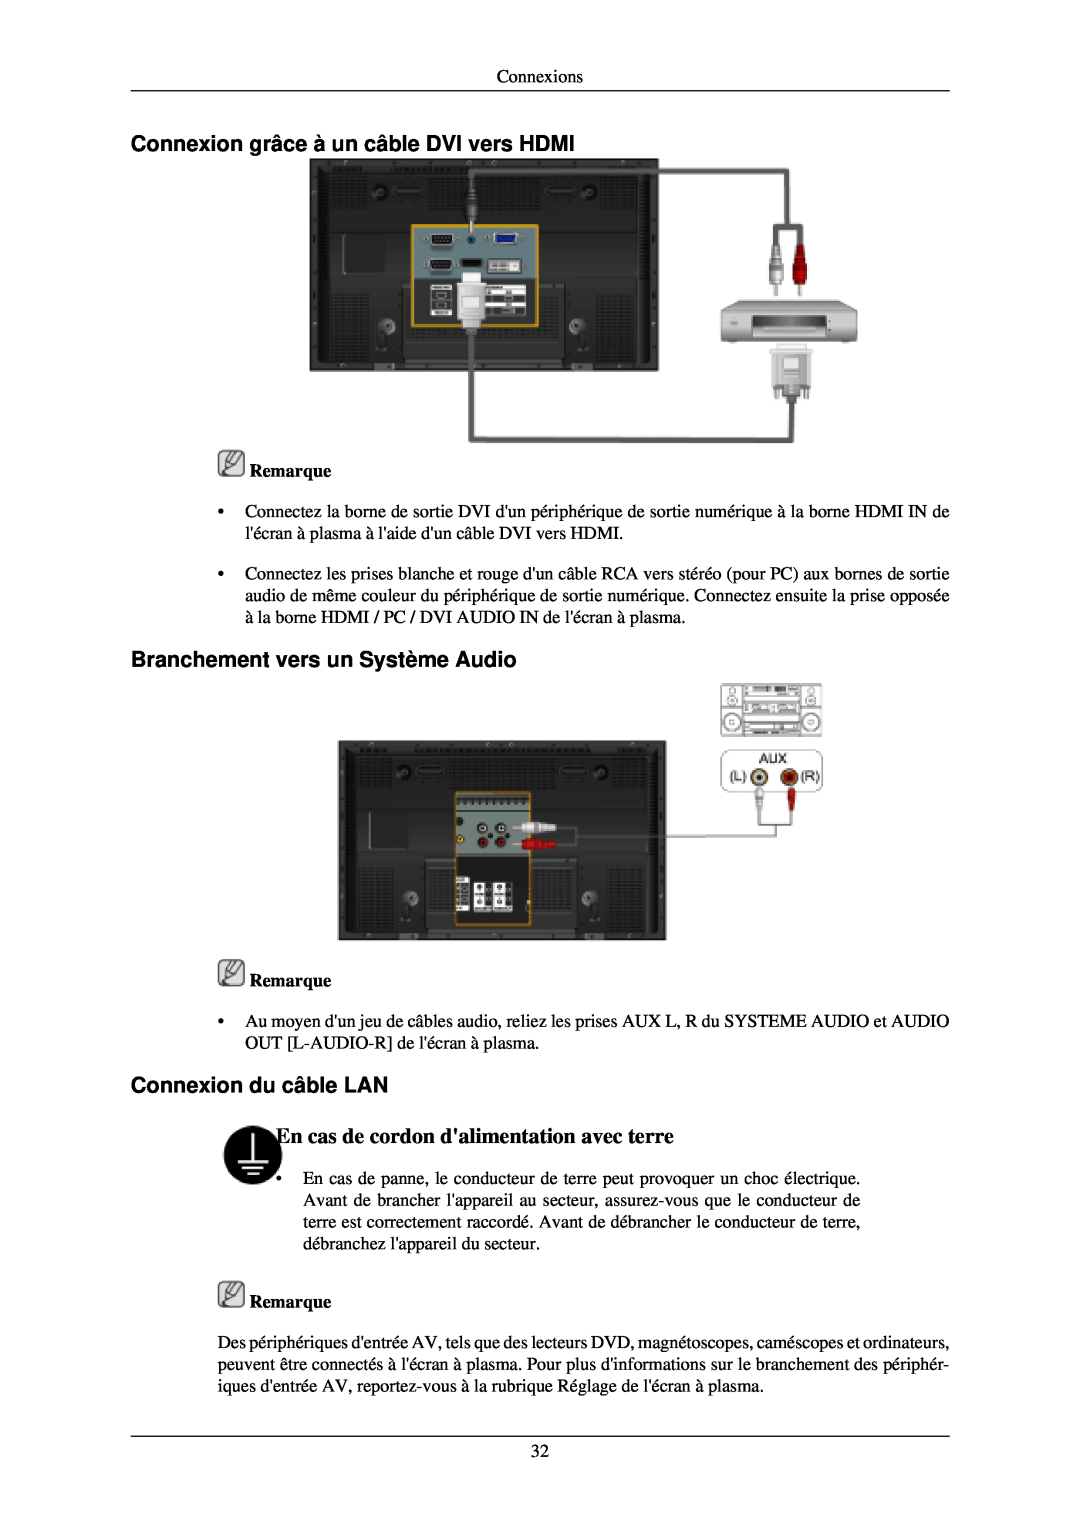 Samsung PH50KLTLBC/EN Connexion grâce à un câble DVI vers HDMI, Branchement vers un Système Audio, Connexion du câble LAN 